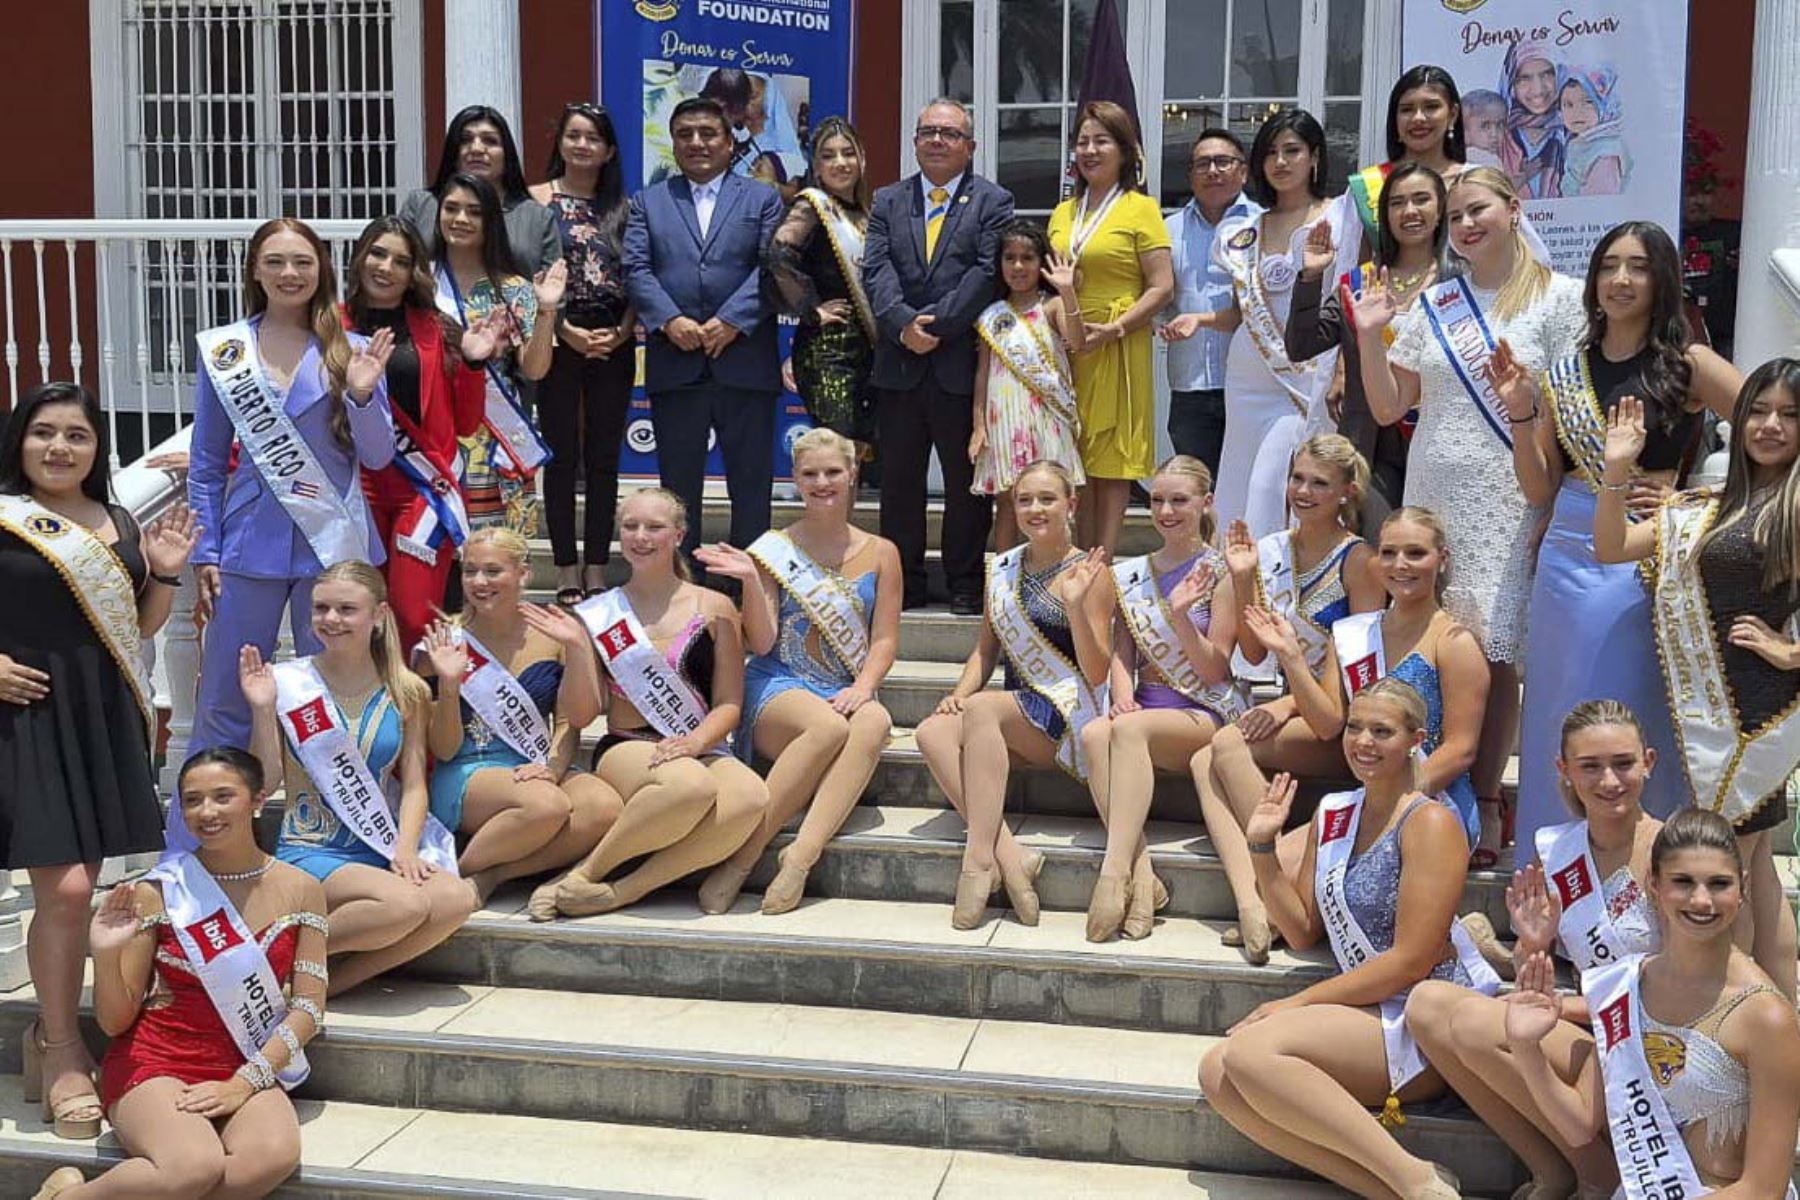 Reinas y bastoneras recorren Trujillo por el 71 Festival Internacional de la Primavera